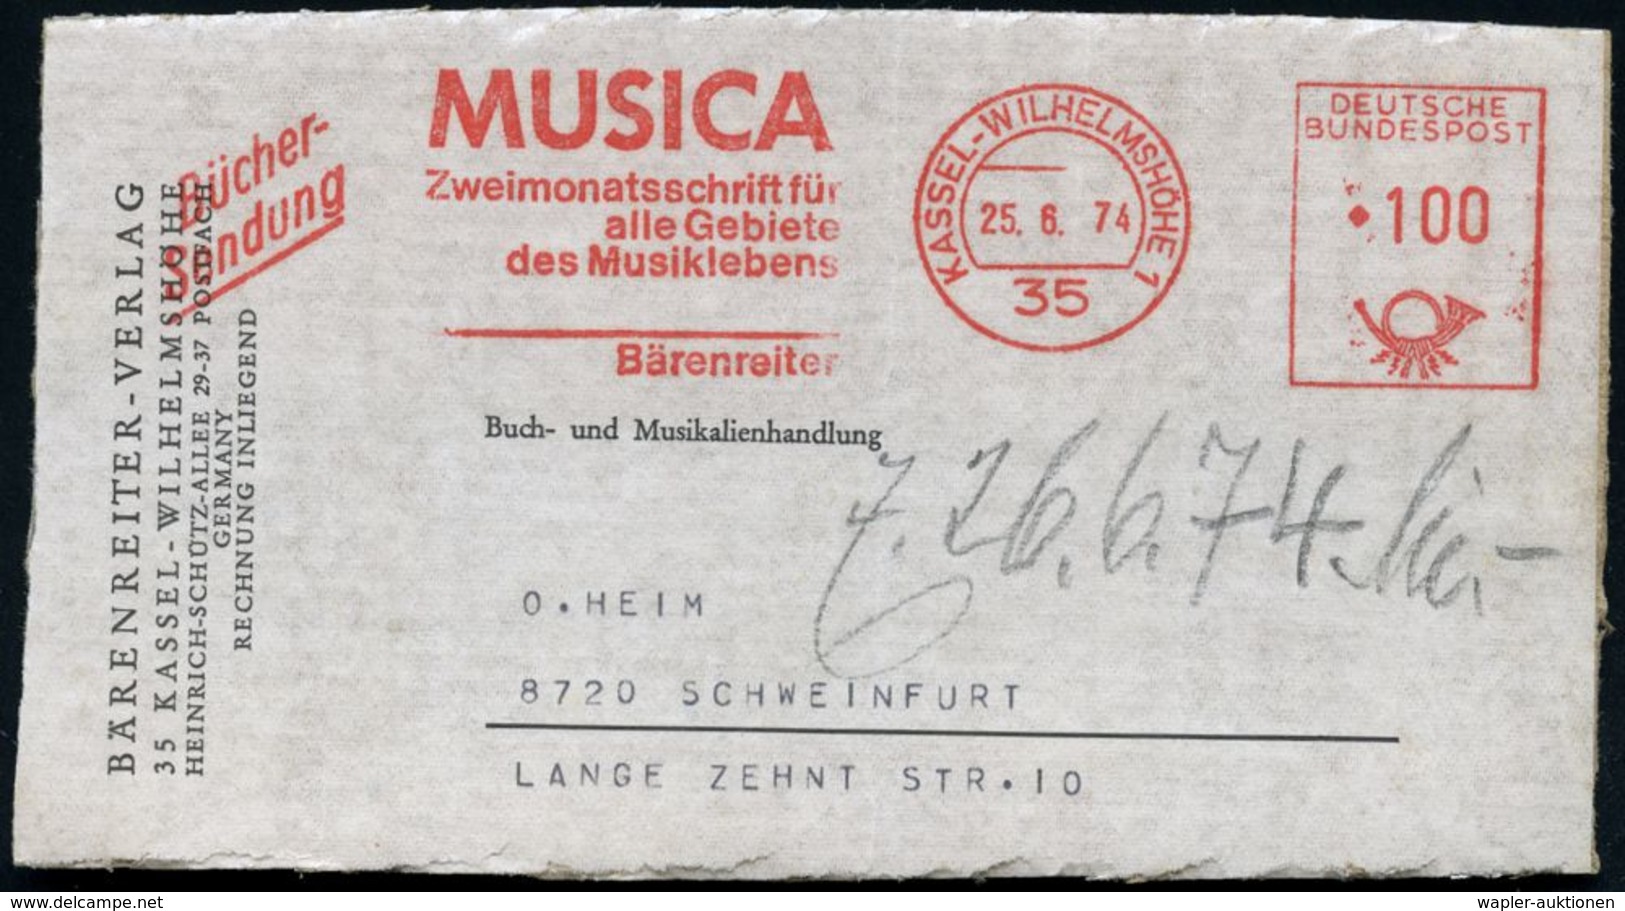 MUSIK-VERLAGE : 35 KASSEL-WILHELMSHÖHE 1/ MUSICA/ Zweimonatsschrift../ Bärenreiter 1974 (25.6.) AFS 100 Pf. + Zusatz "Bü - Musik